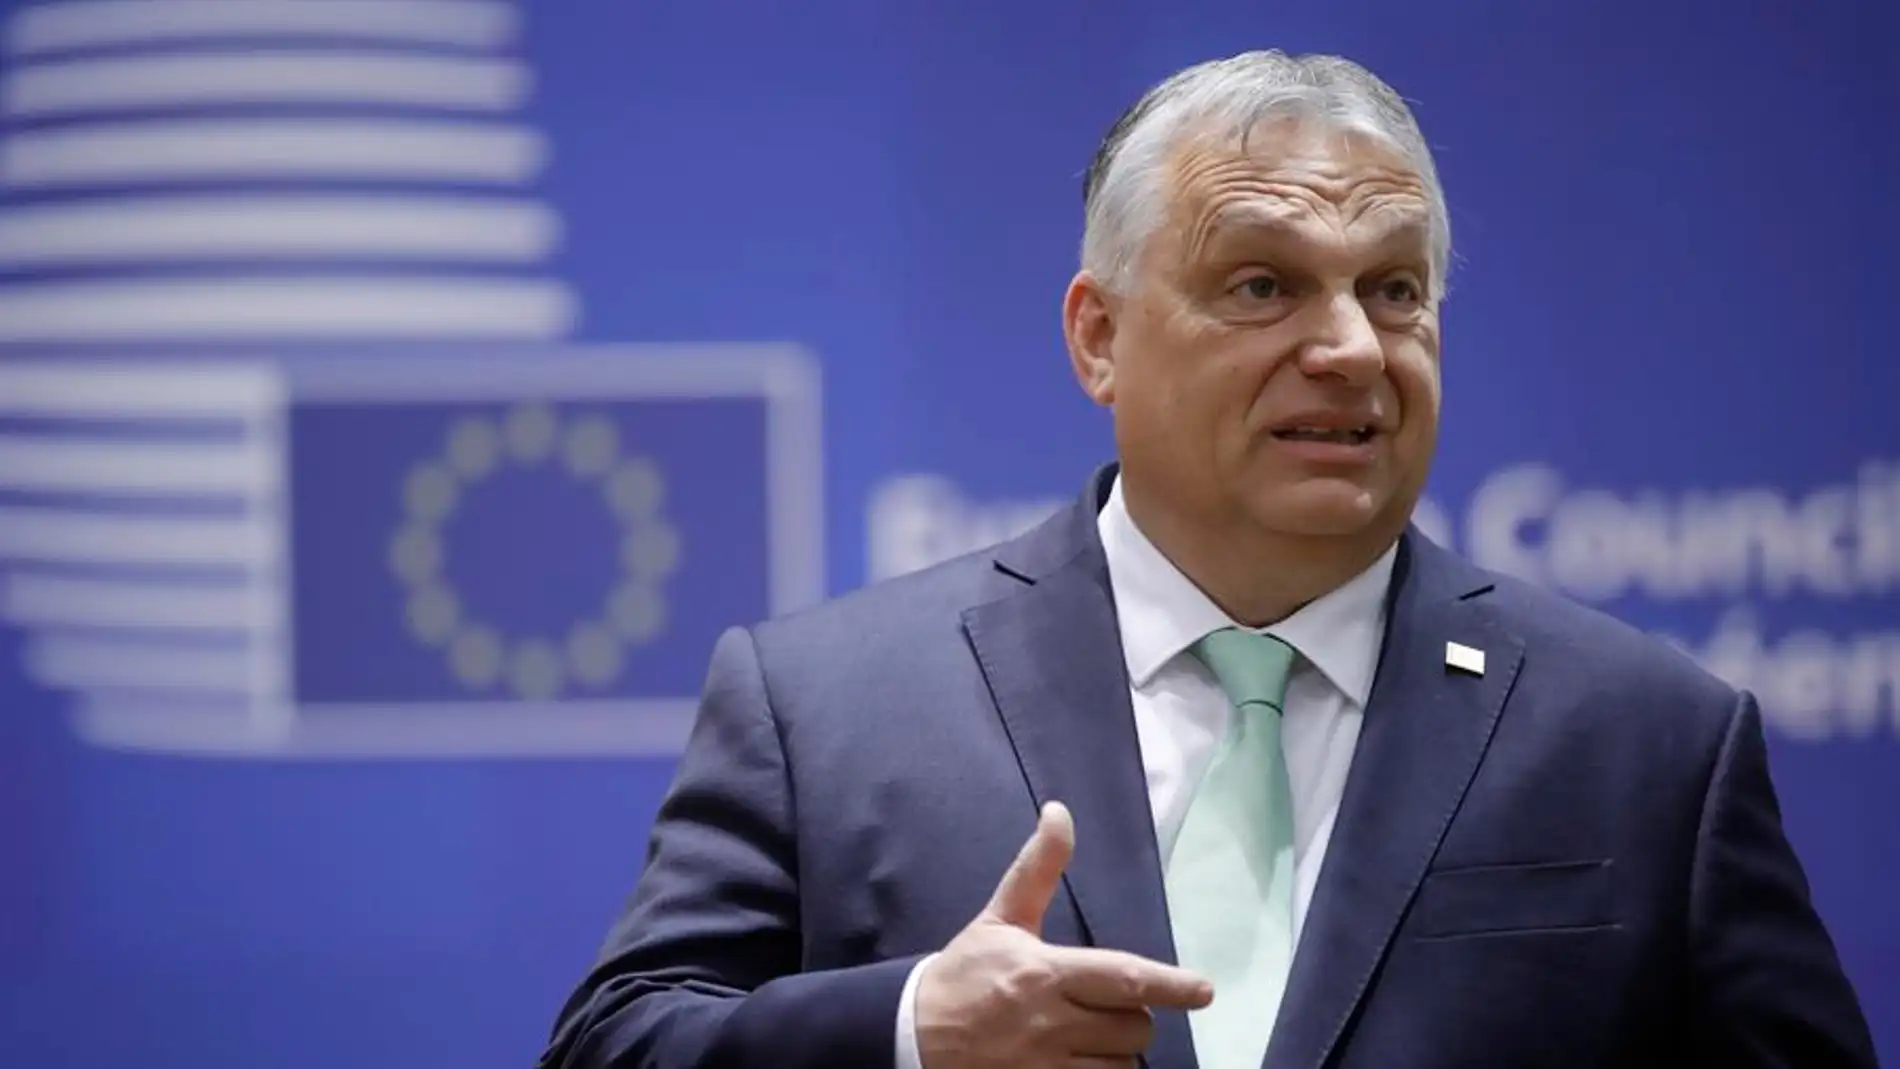 Viktor Orbán compara el proyecto de la Unión Europea con los planes de Hitler